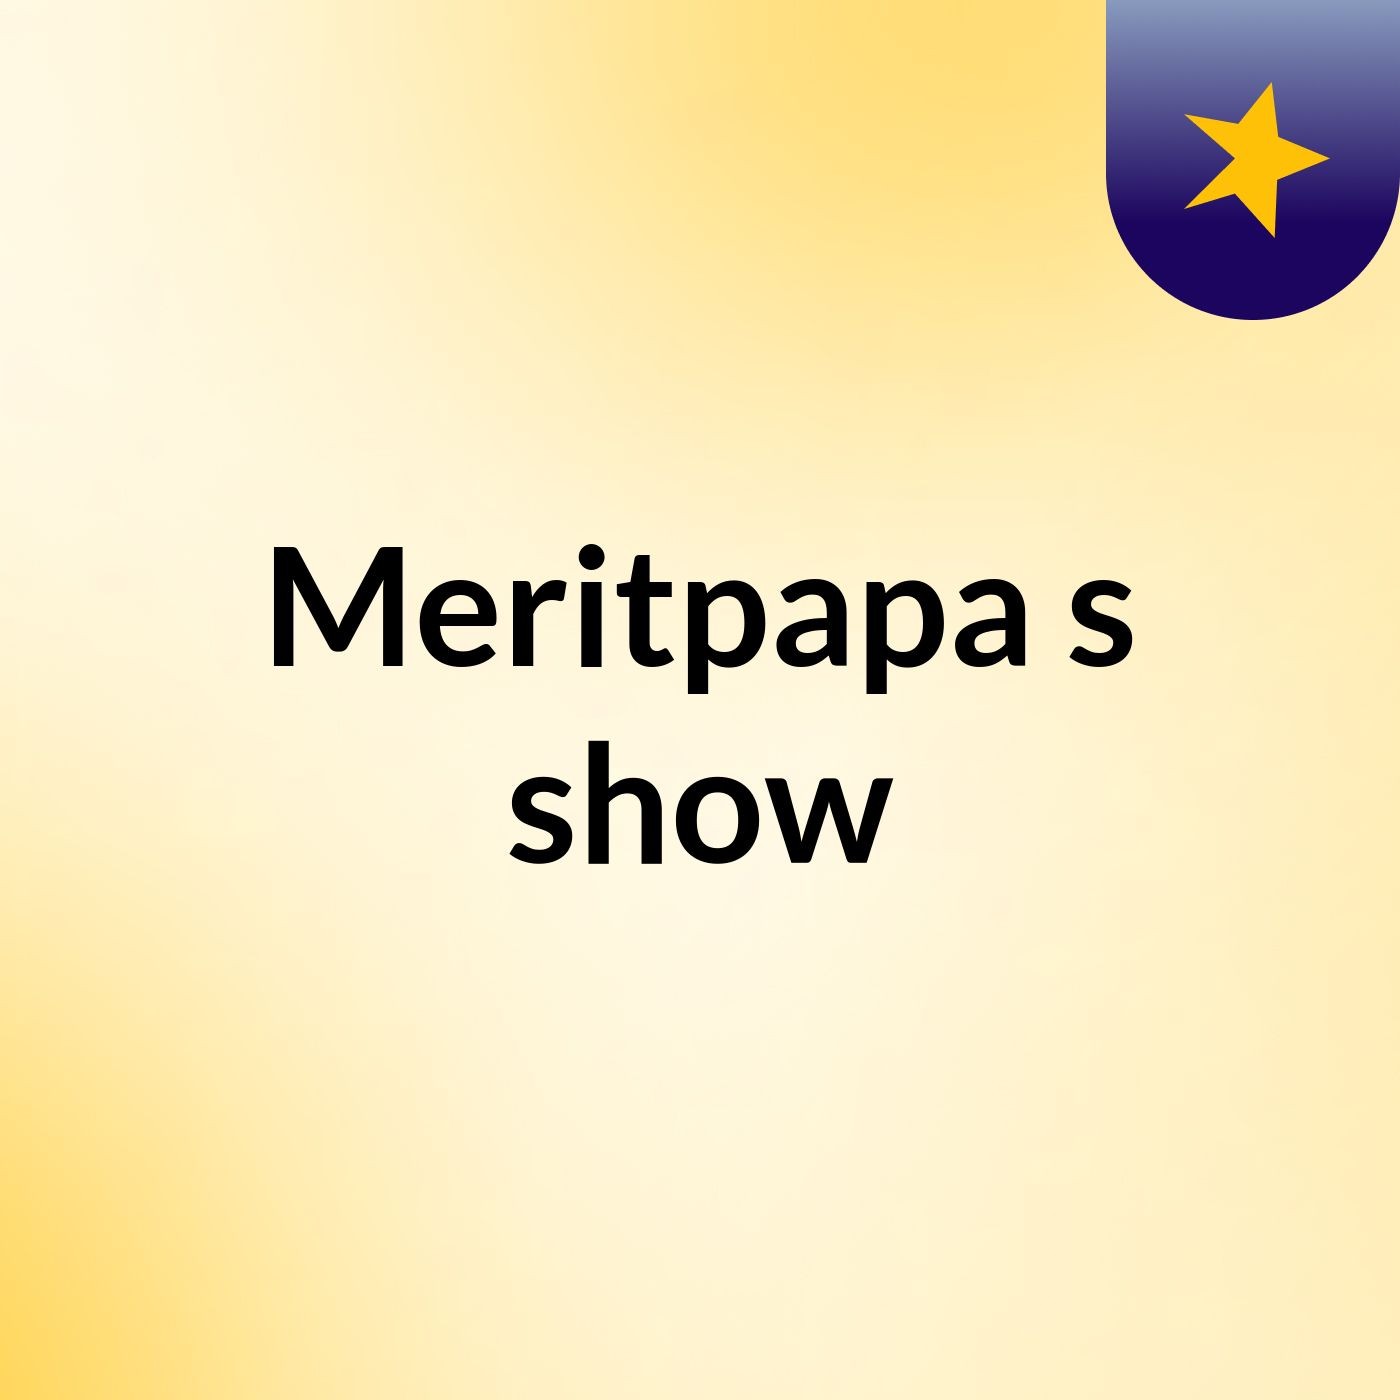 Episode 2 - Meritpapa's show